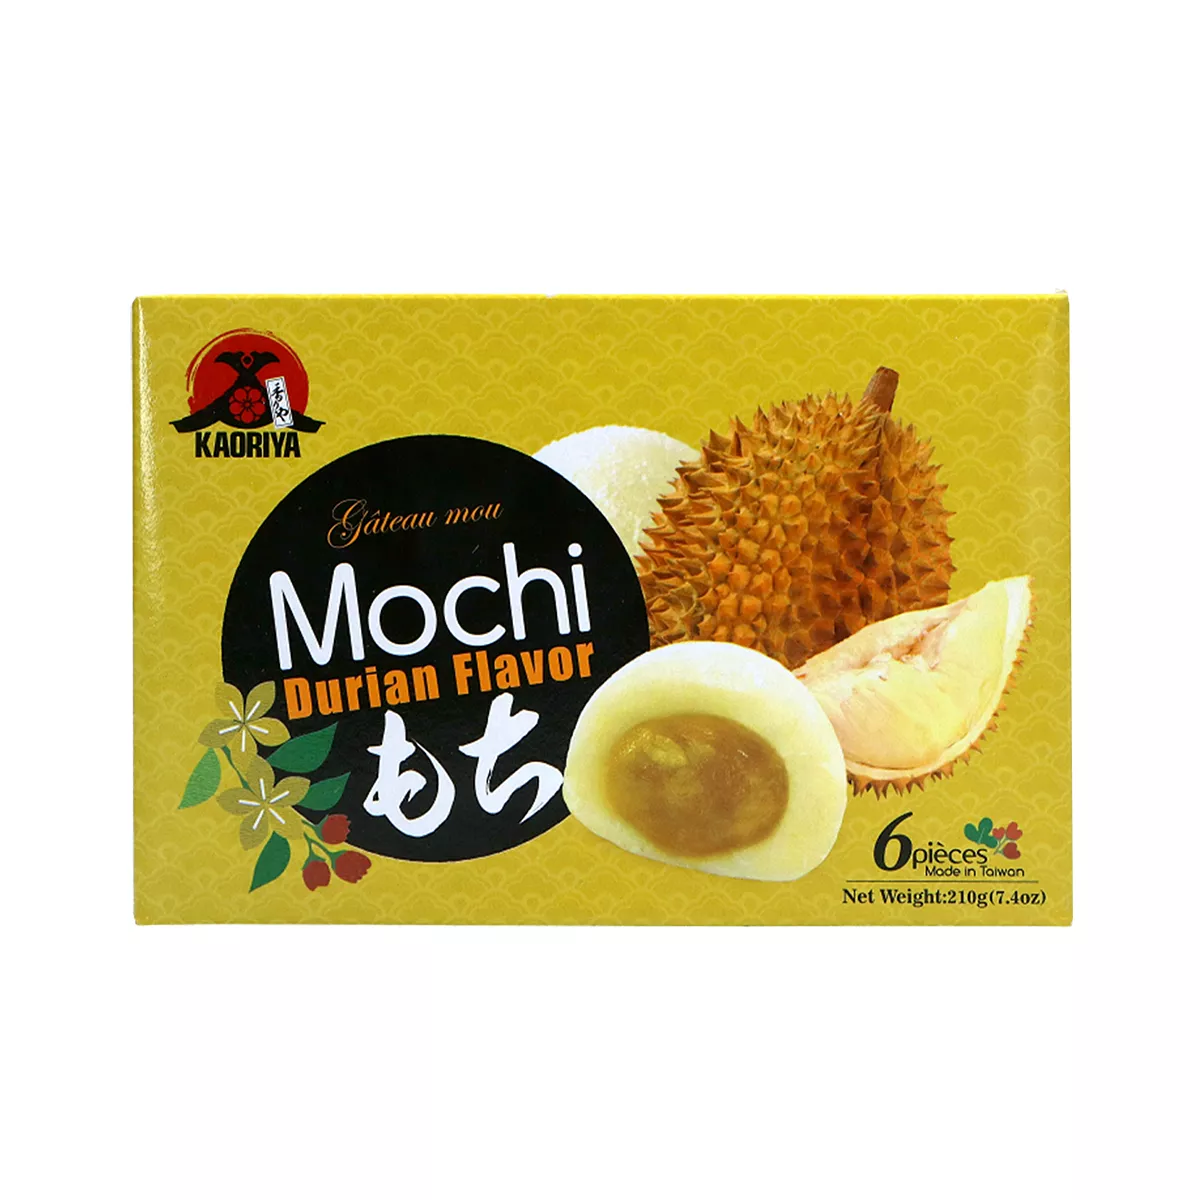 Mochi cu durian KAORIYA 210g, [],asianfood.ro